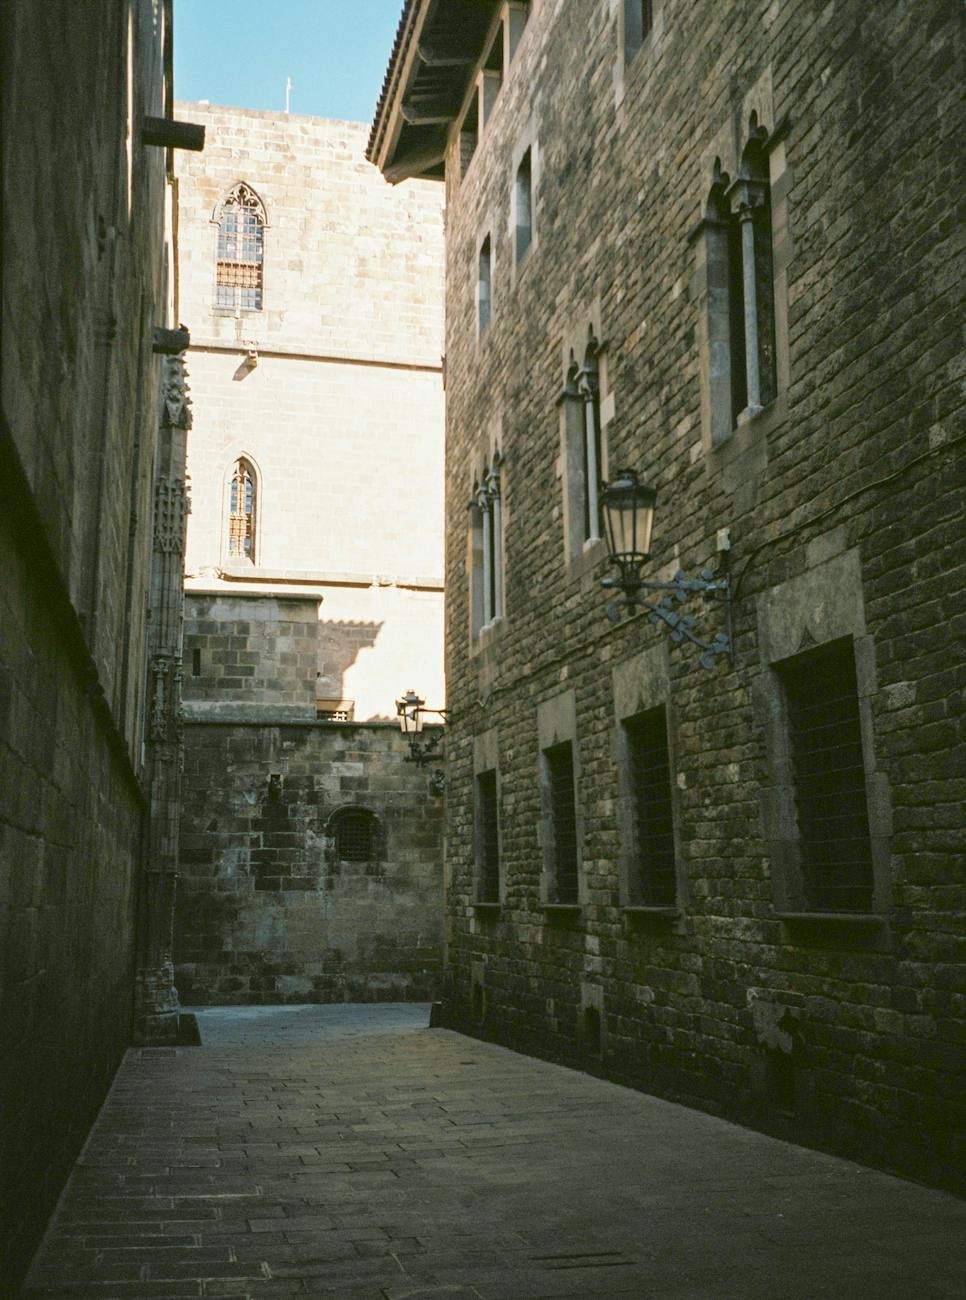 narrow street and brick walls